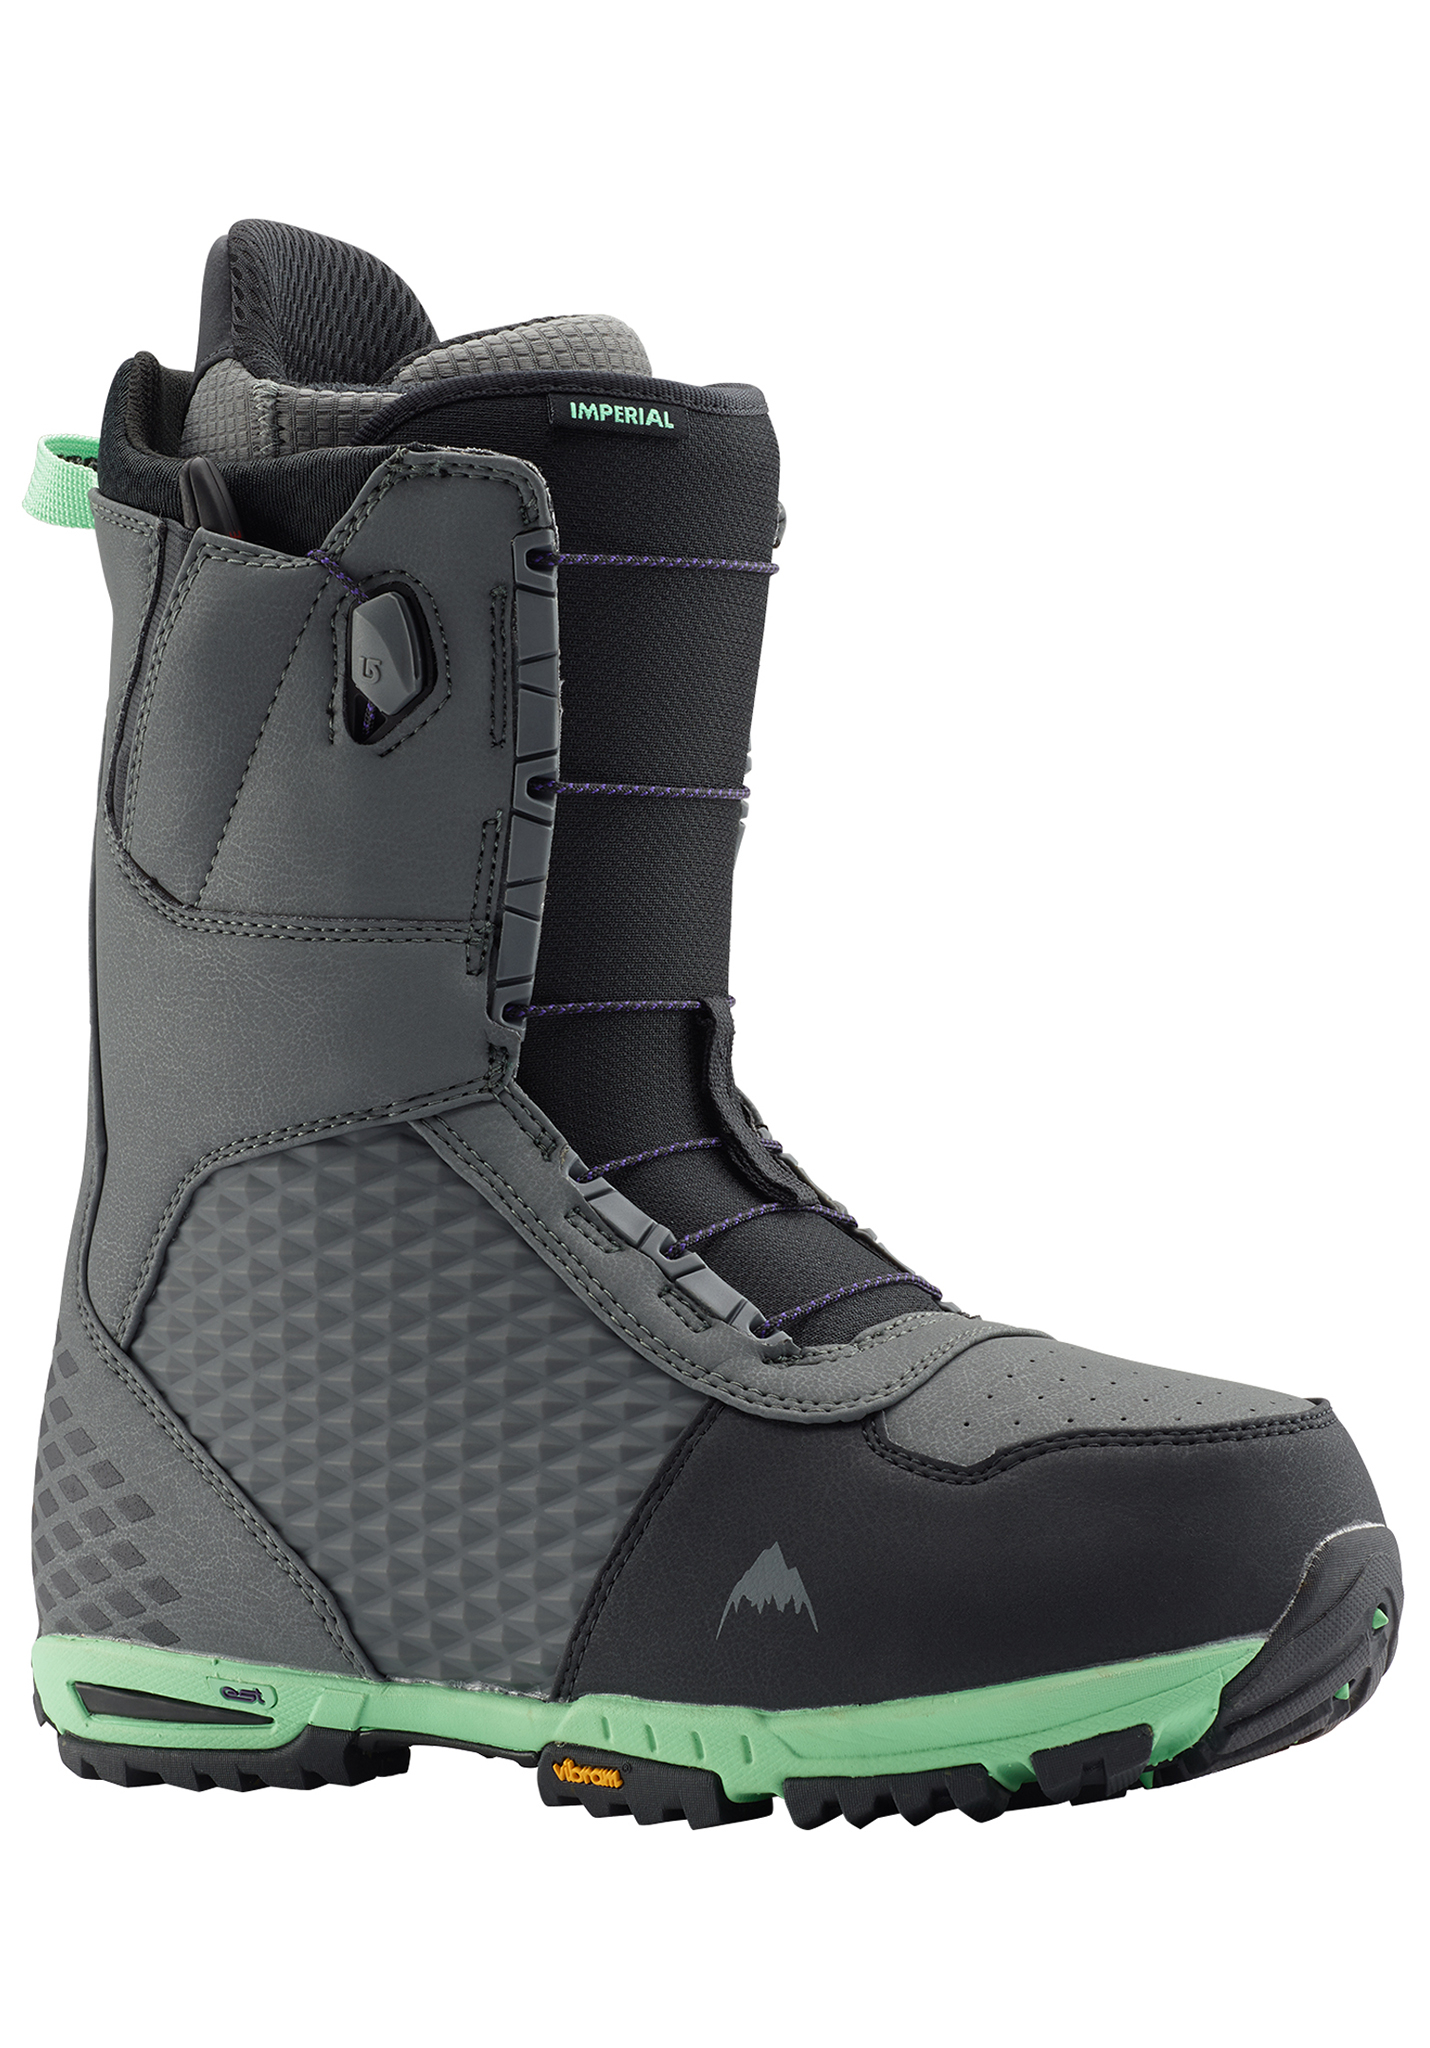 Burton Imperial Snowboard Boots grau/grün 40